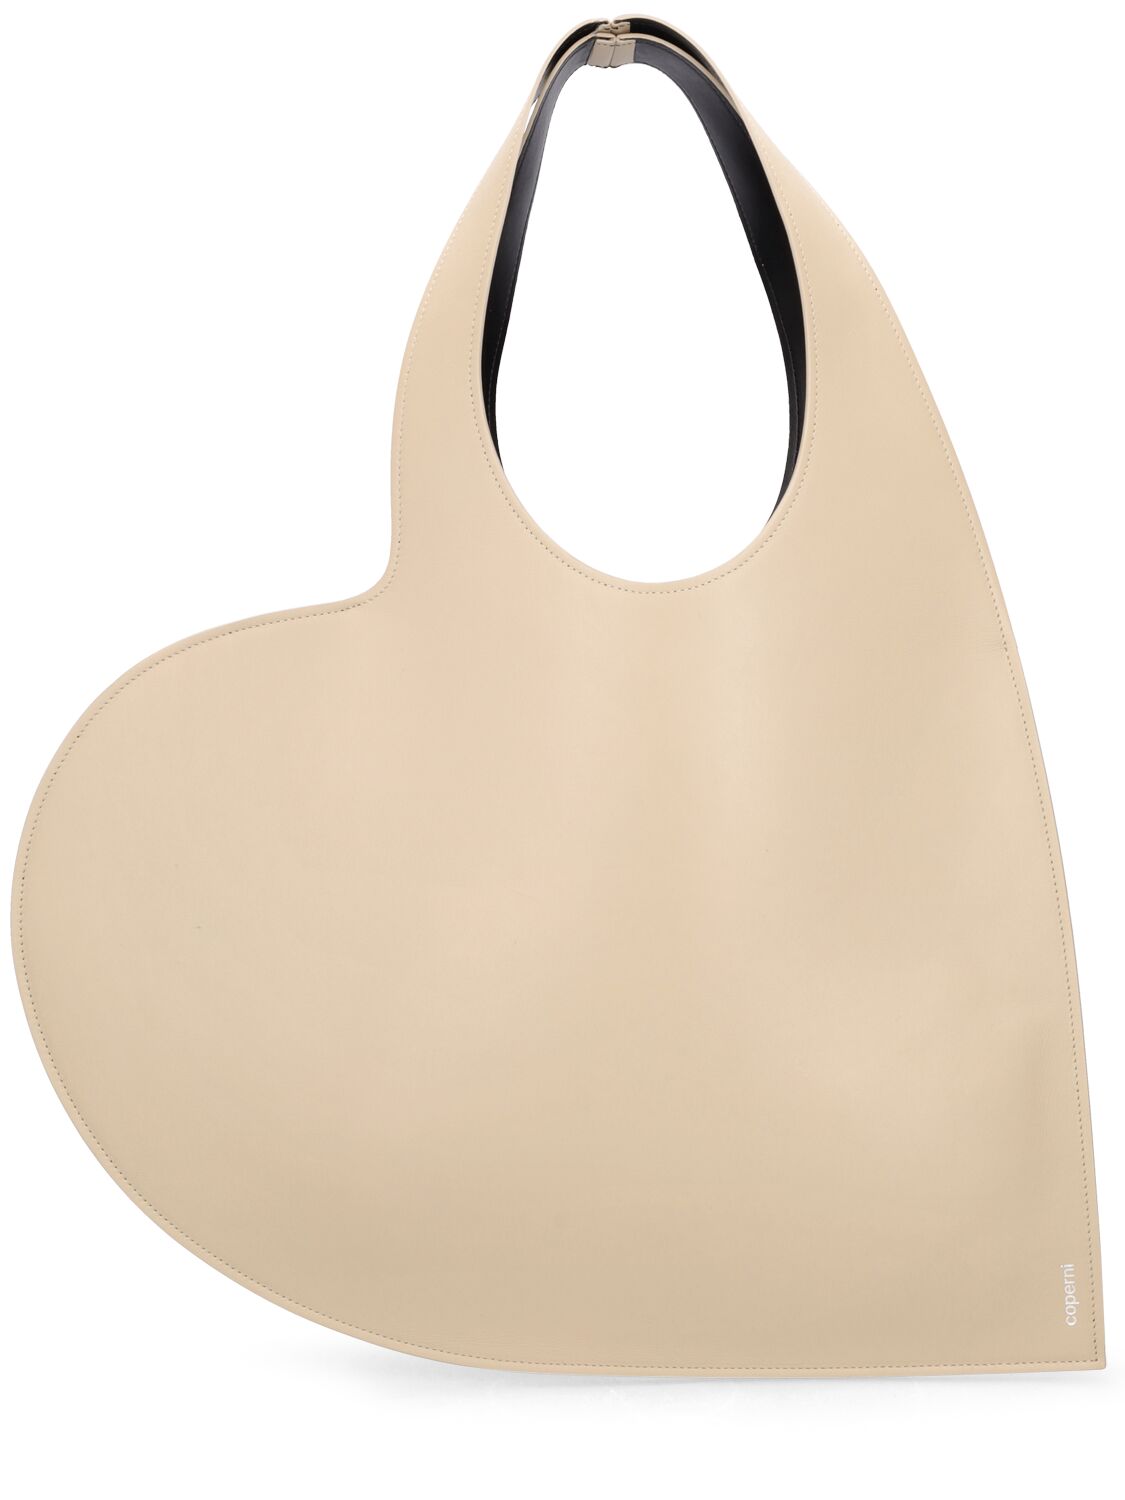 Image of Heart Leather Shoulder Bag